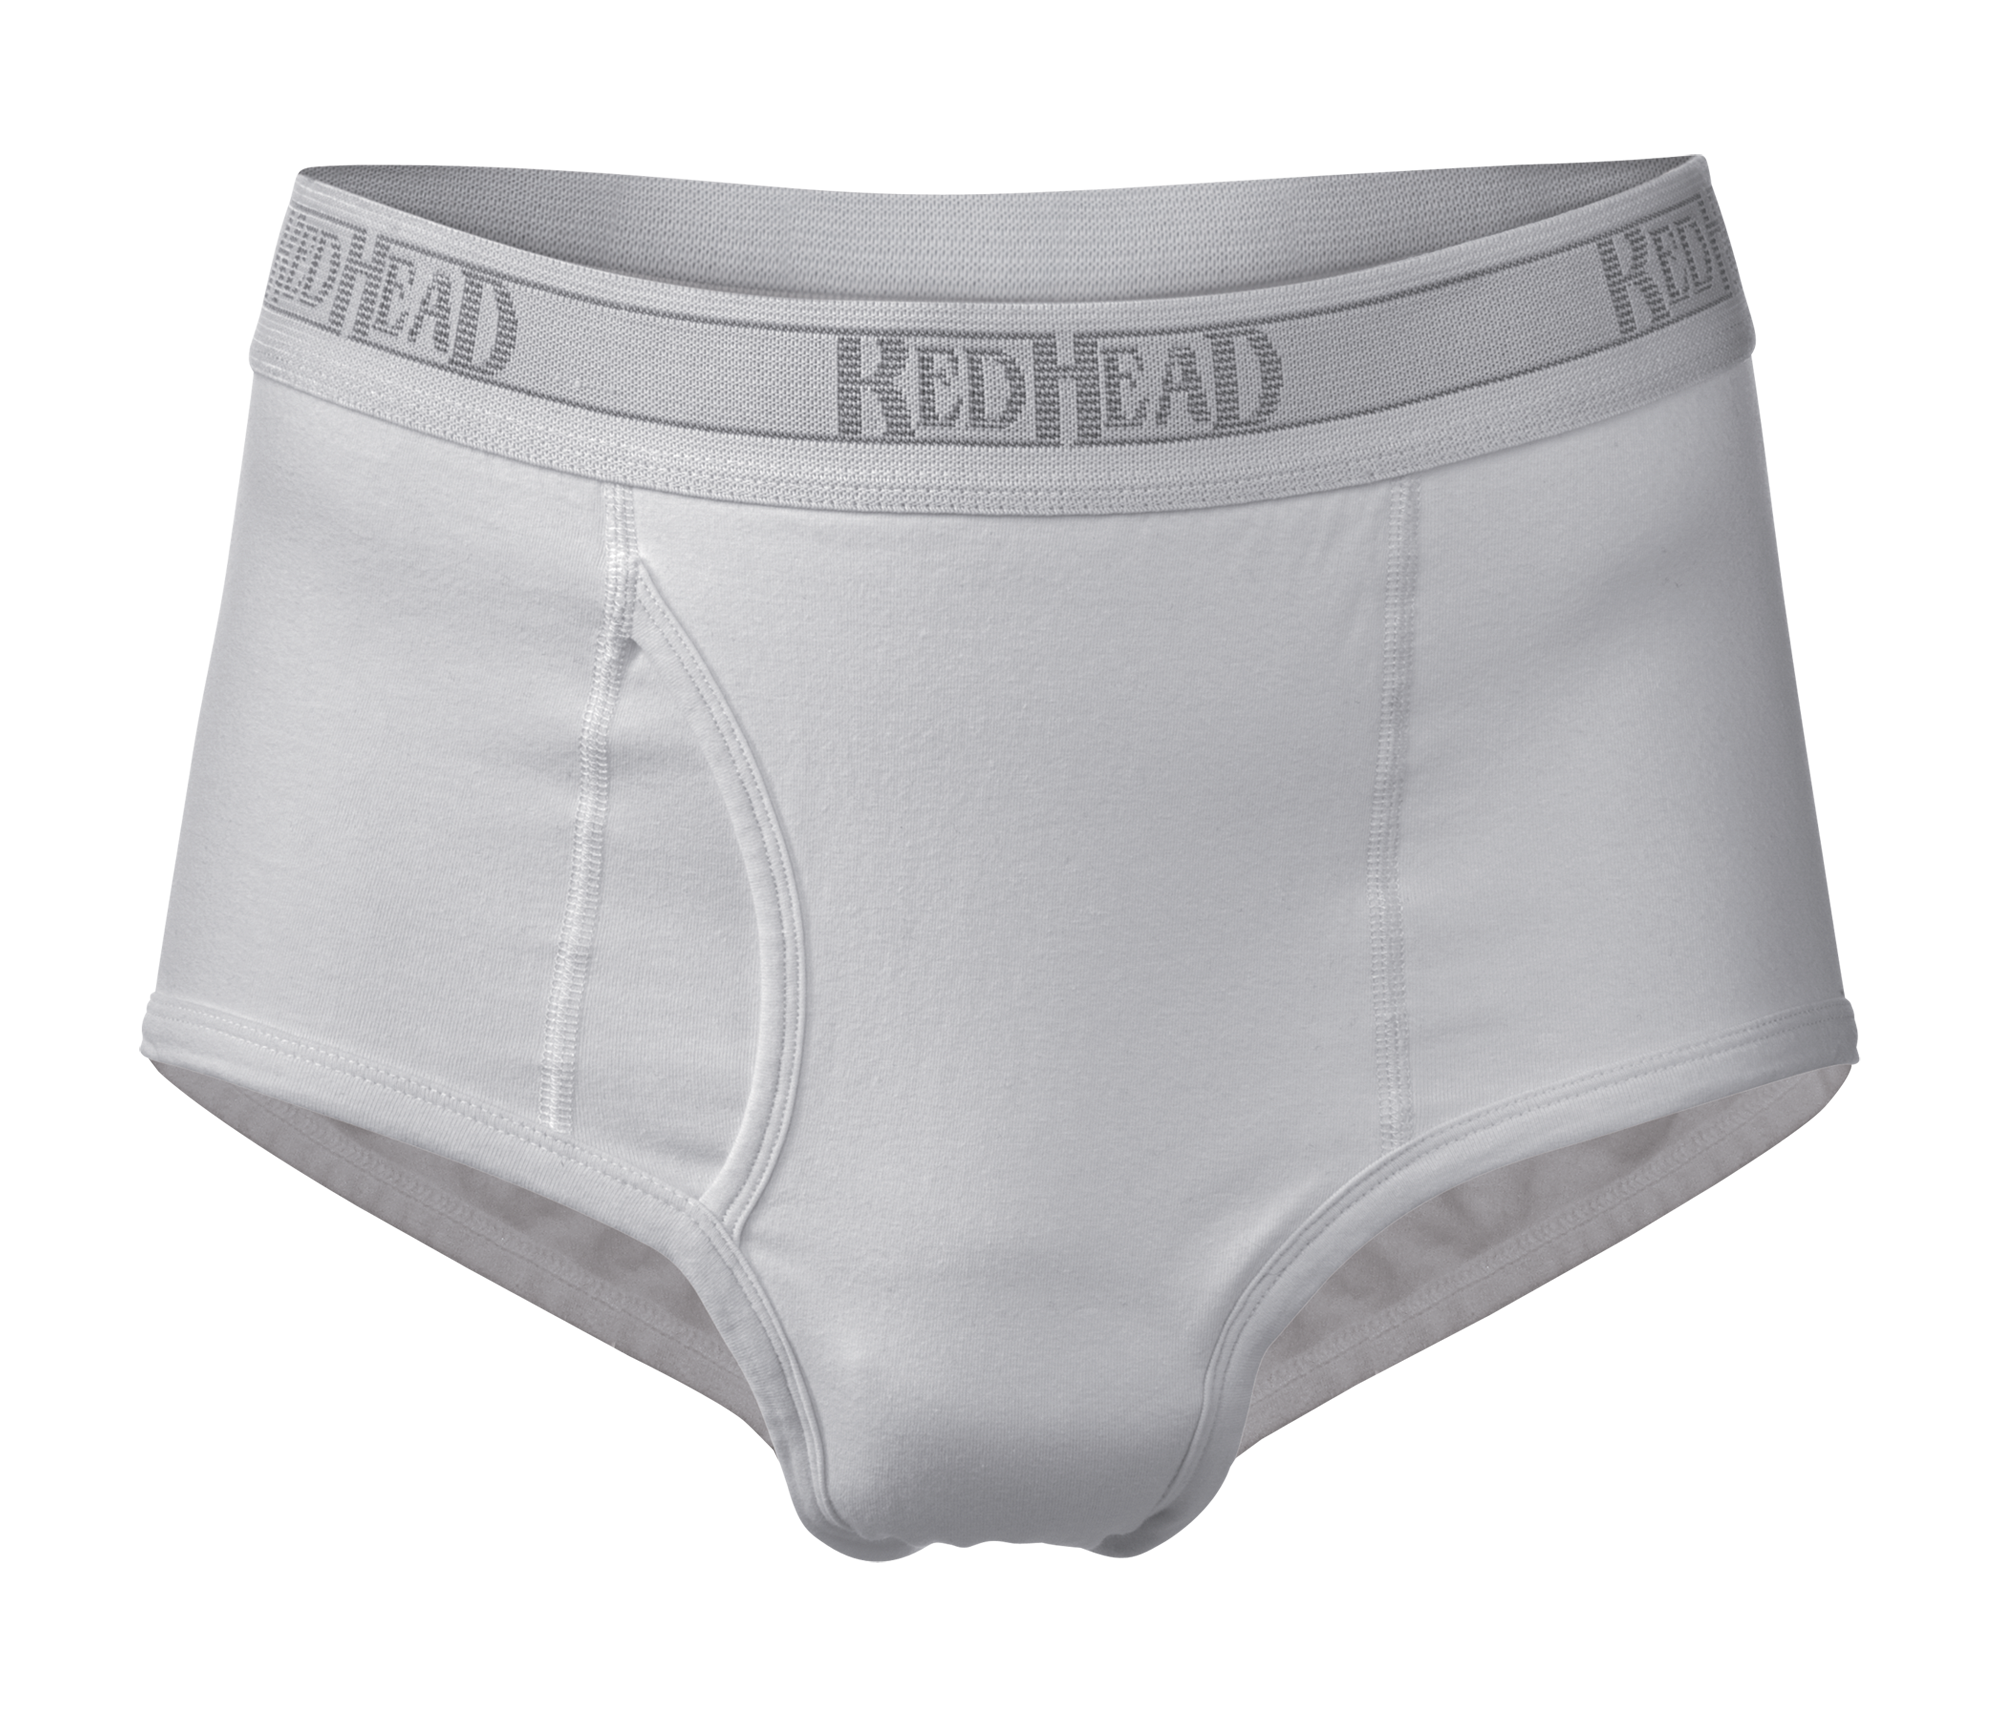 Redhead Underwear for Men